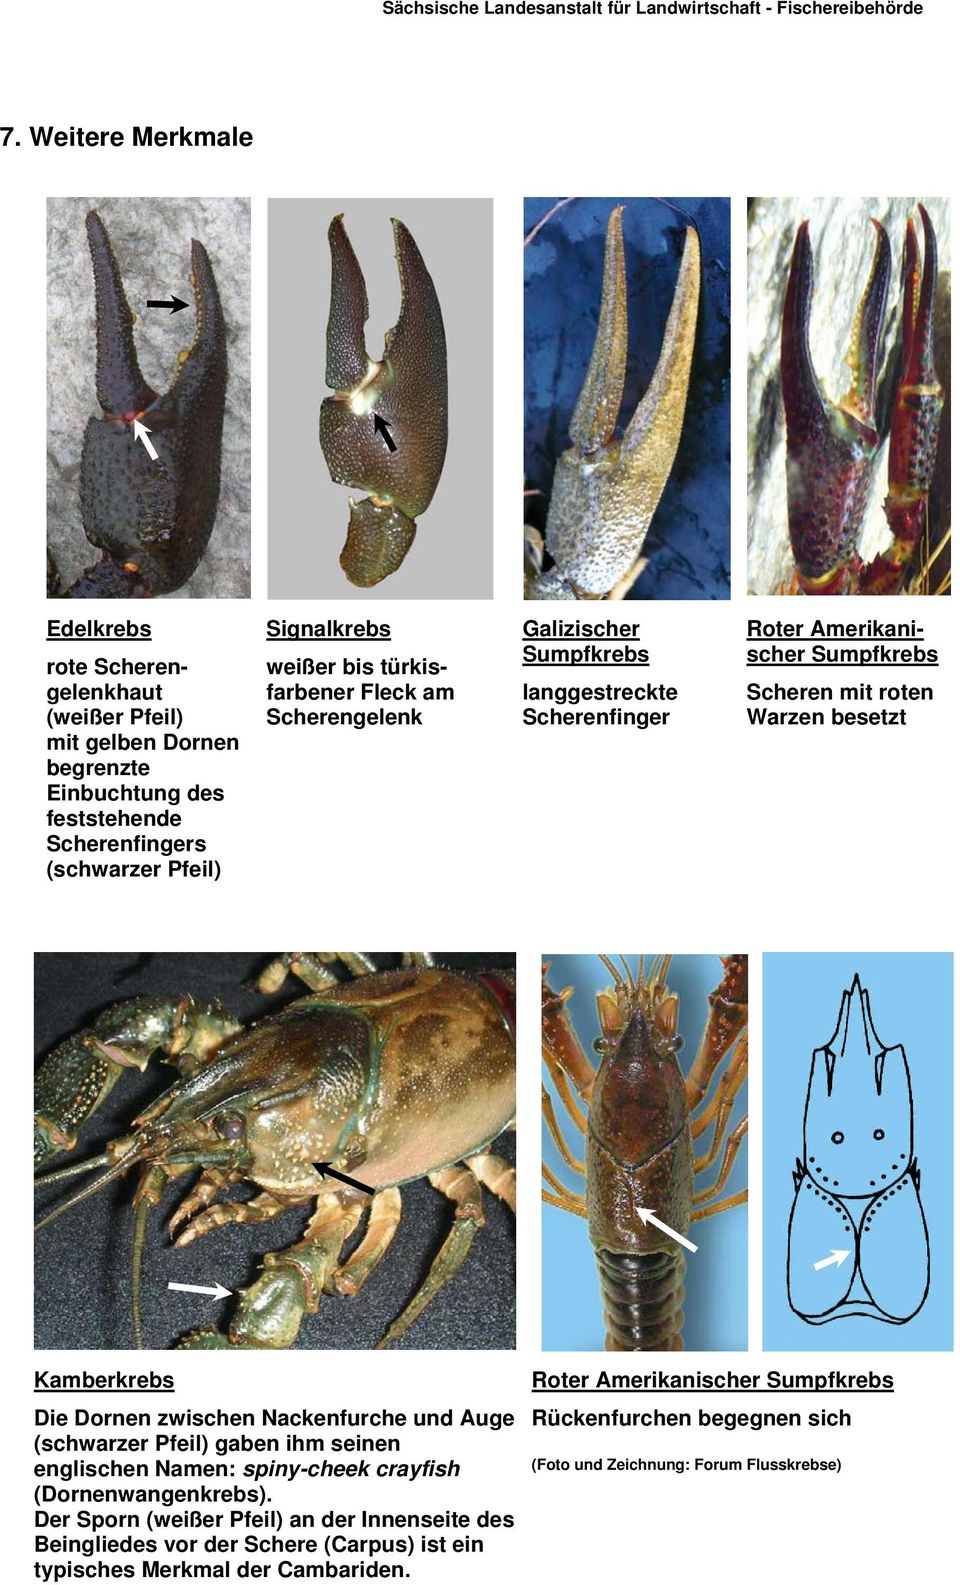 Dornen zwischen Nackenfurche und Auge (schwarzer Pfeil) gaben ihm seinen englischen Namen: spiny-cheek crayfish (Dornenwangenkrebs).